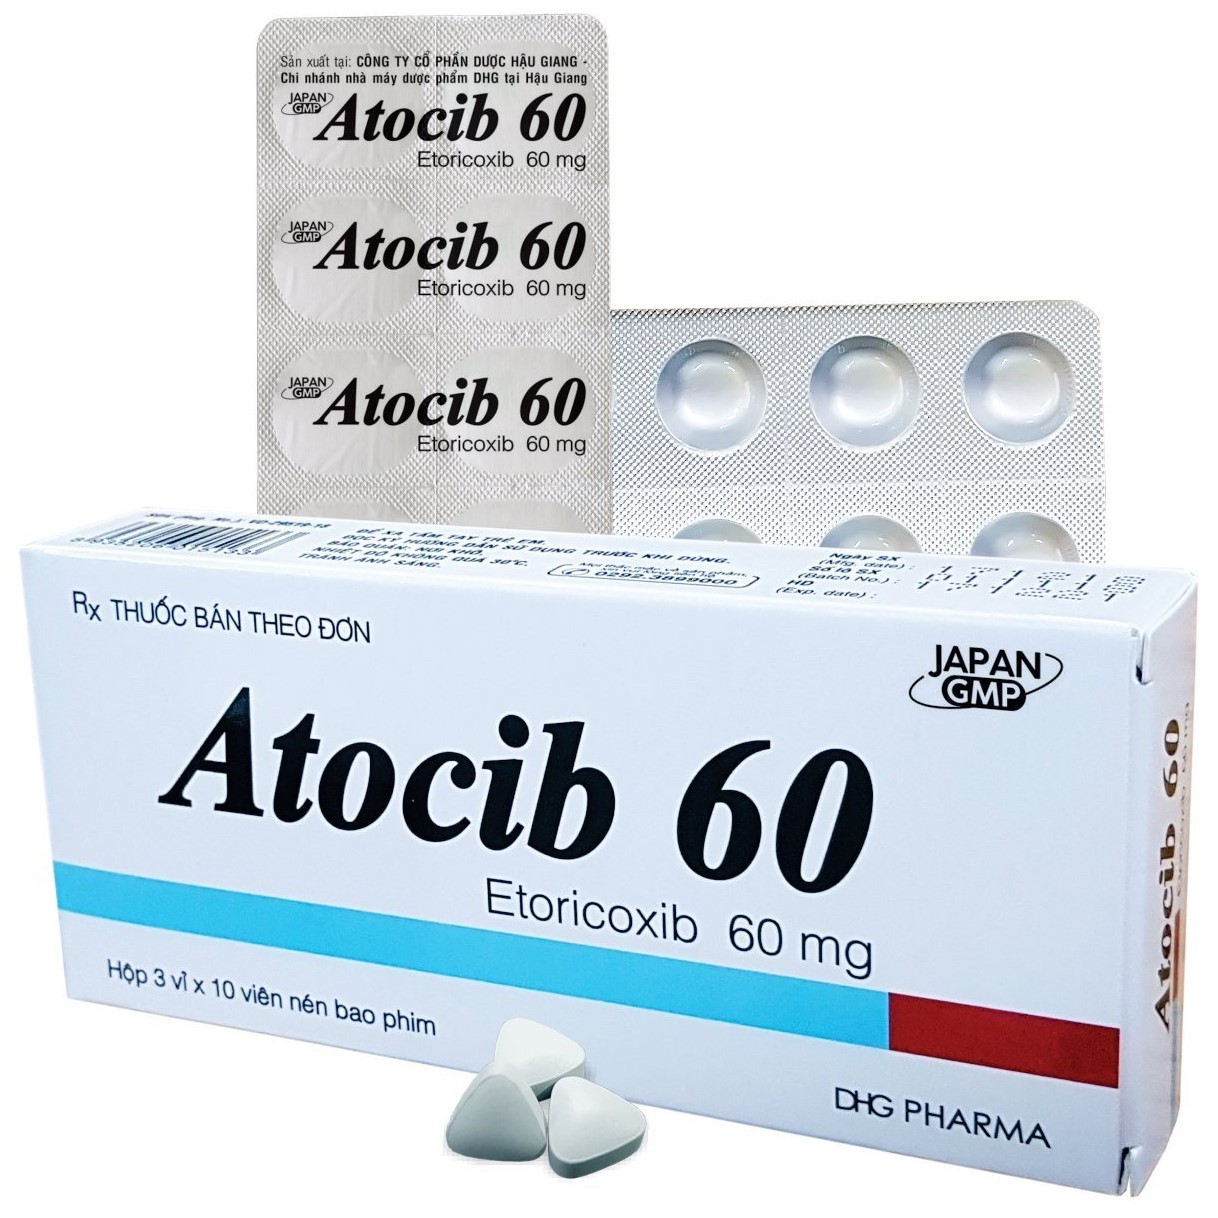 Thuốc bán theo đơn Atocib 60 có thành phần etoricoxib với hàm lượng 60 mg